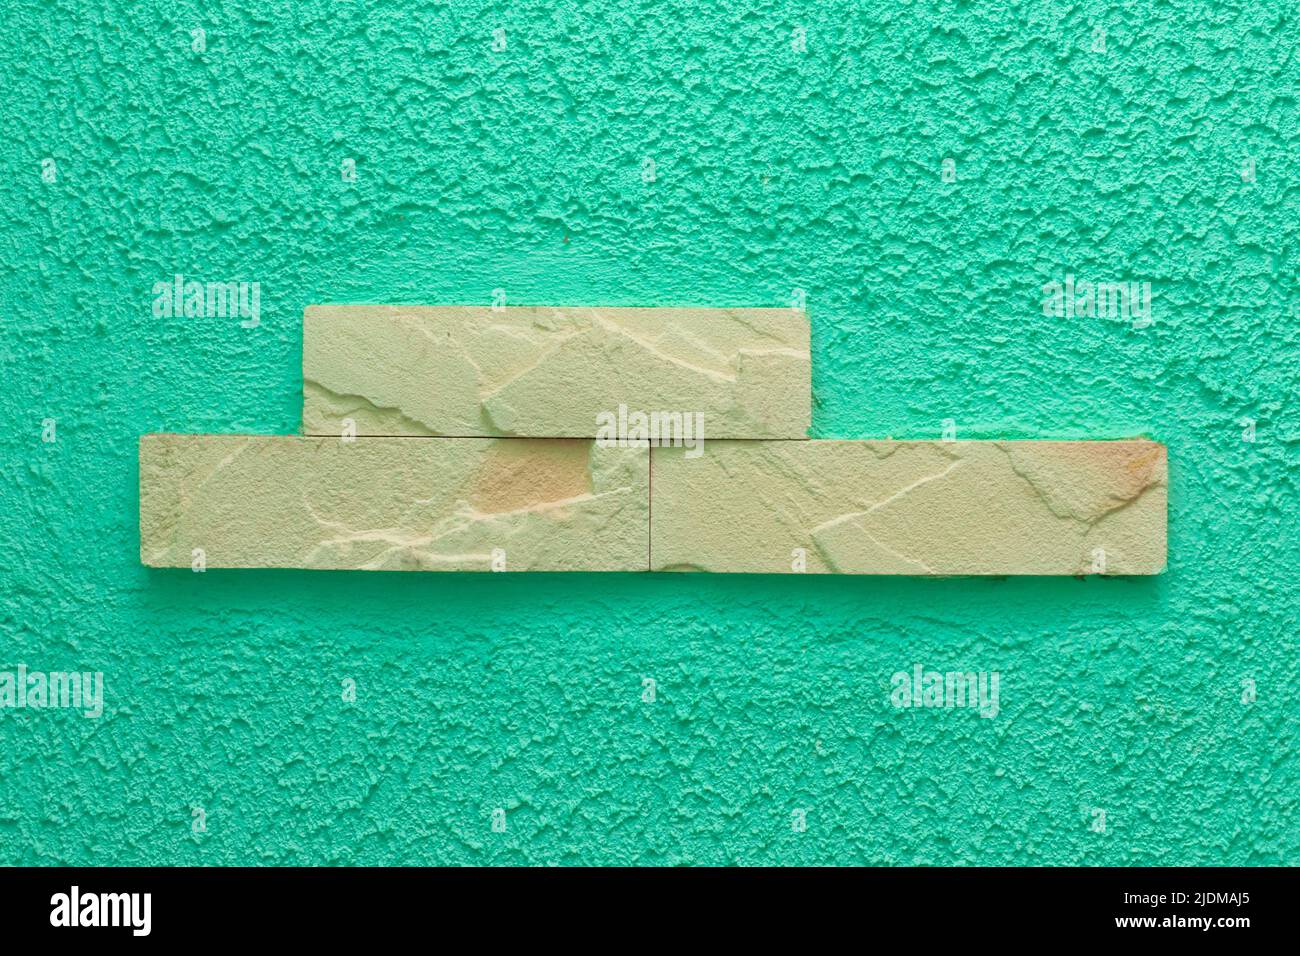 Helles Ziegelelement Fragment abstraktes Innenarchitektur Wandmuster grün oder aquamarin Farbe Textur Fassade Hintergrund. Stockfoto